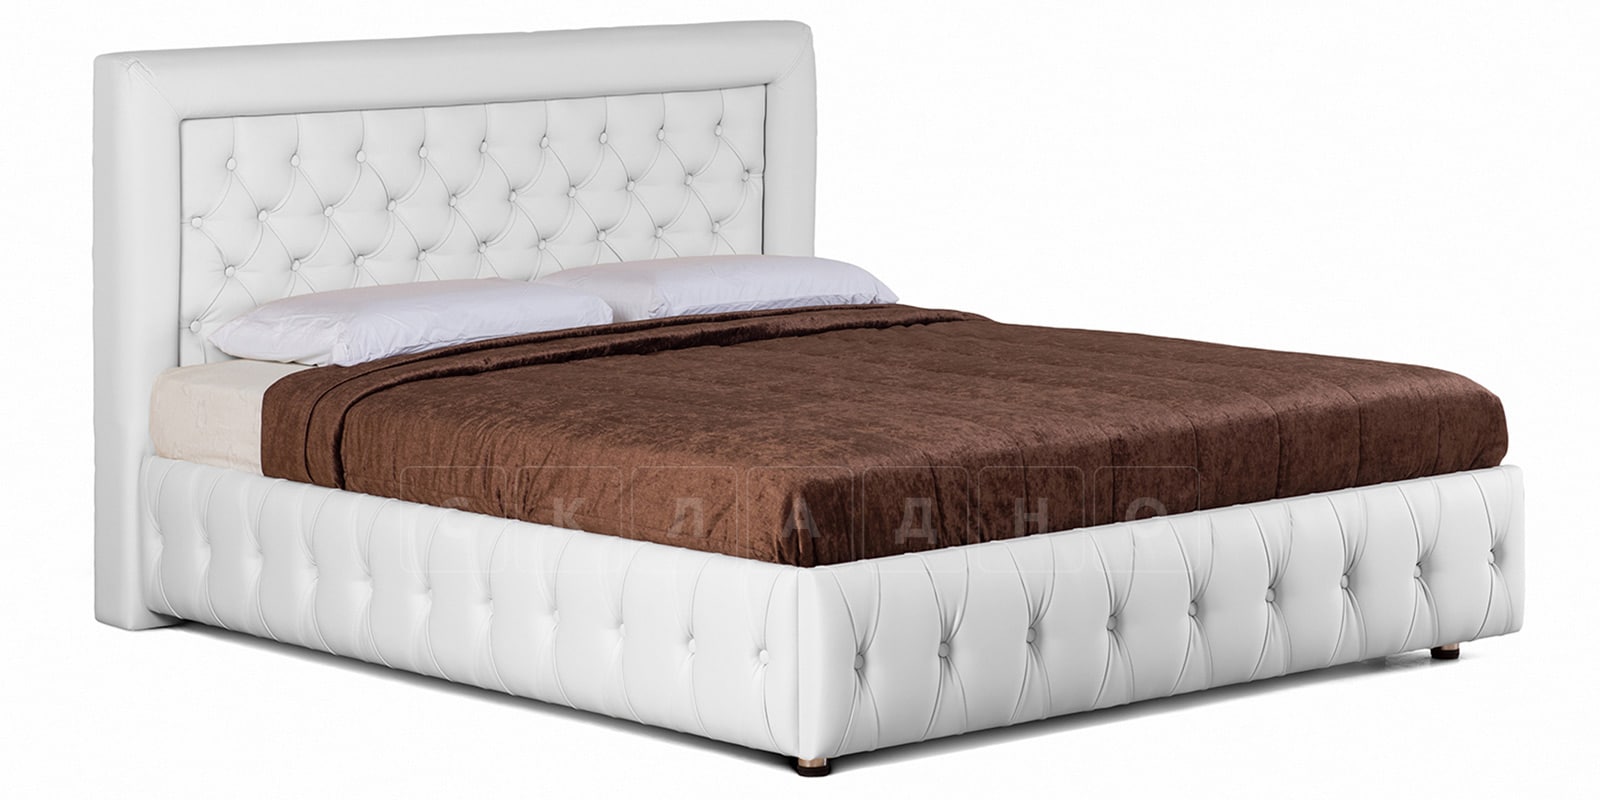 Мягкая кровать Малибу 160 см экокожа белого цвета вариант 7-2 фото 1 | интернет-магазин Складно